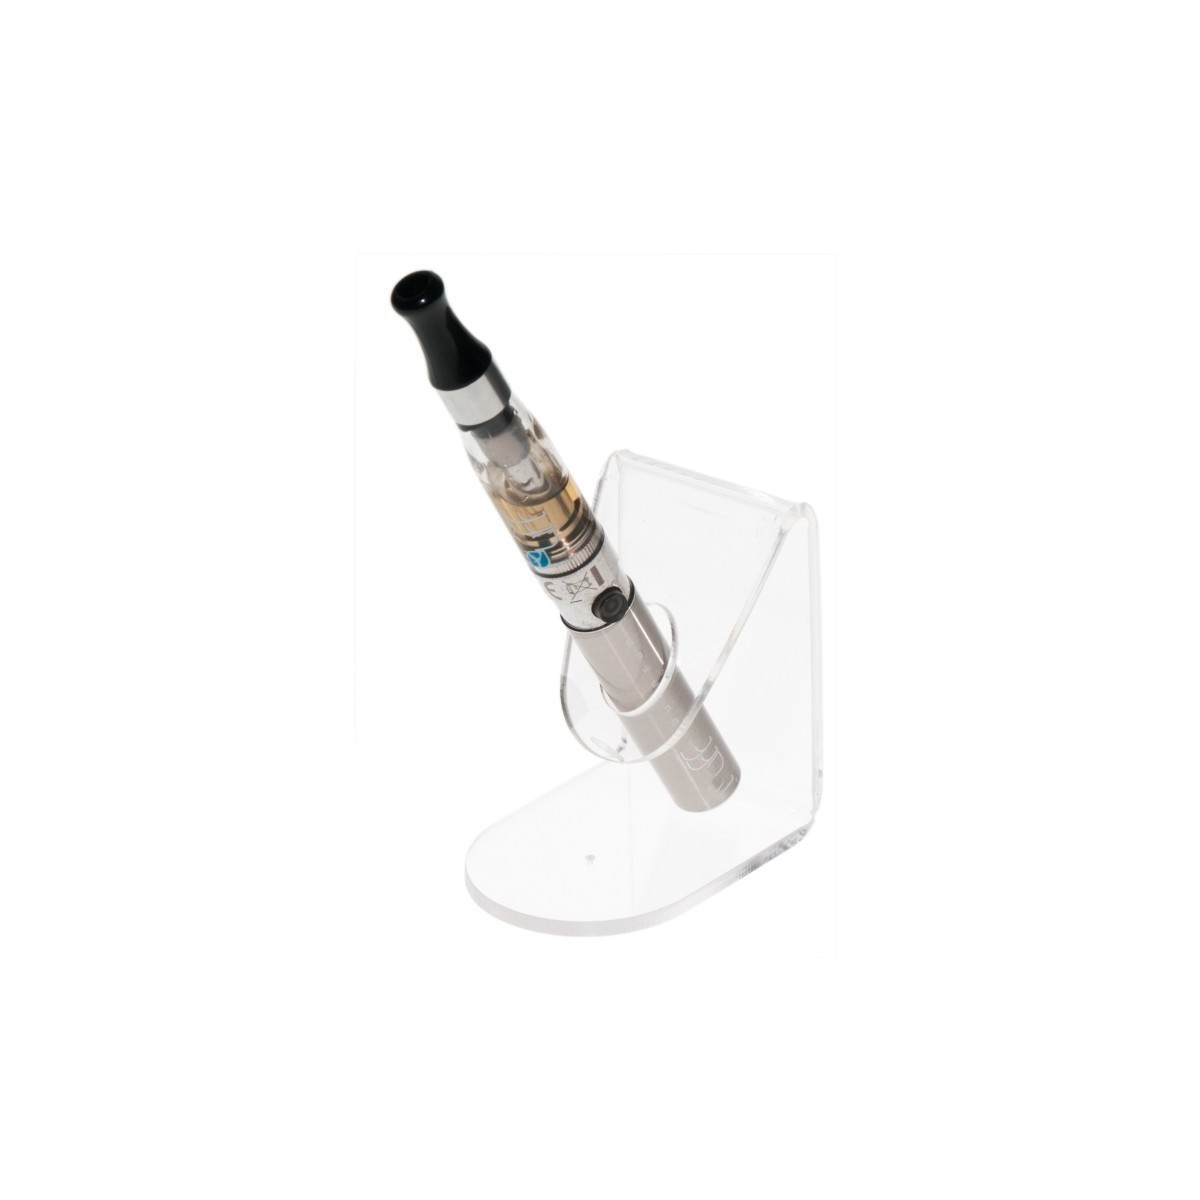 Porta sigaretta elettronica da banco in plexiglass trasparente - Misura: 5 x 6.5 x H7 cm